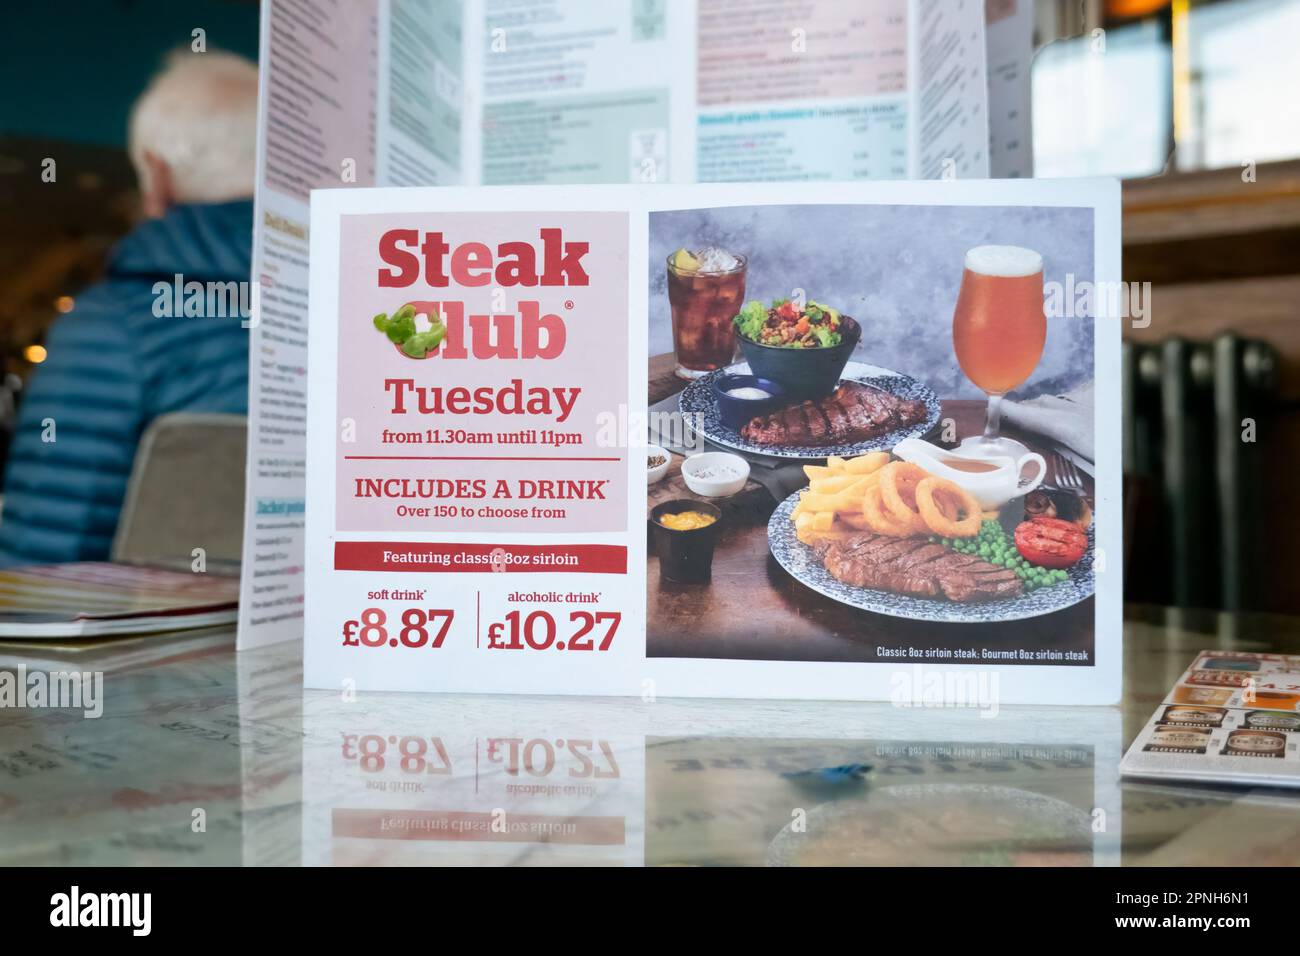 Una carta da menu da un pub JD Wetherspoons. La scheda mostra i prezzi del famoso Steak club disponibile nel pub ogni martedì Foto Stock